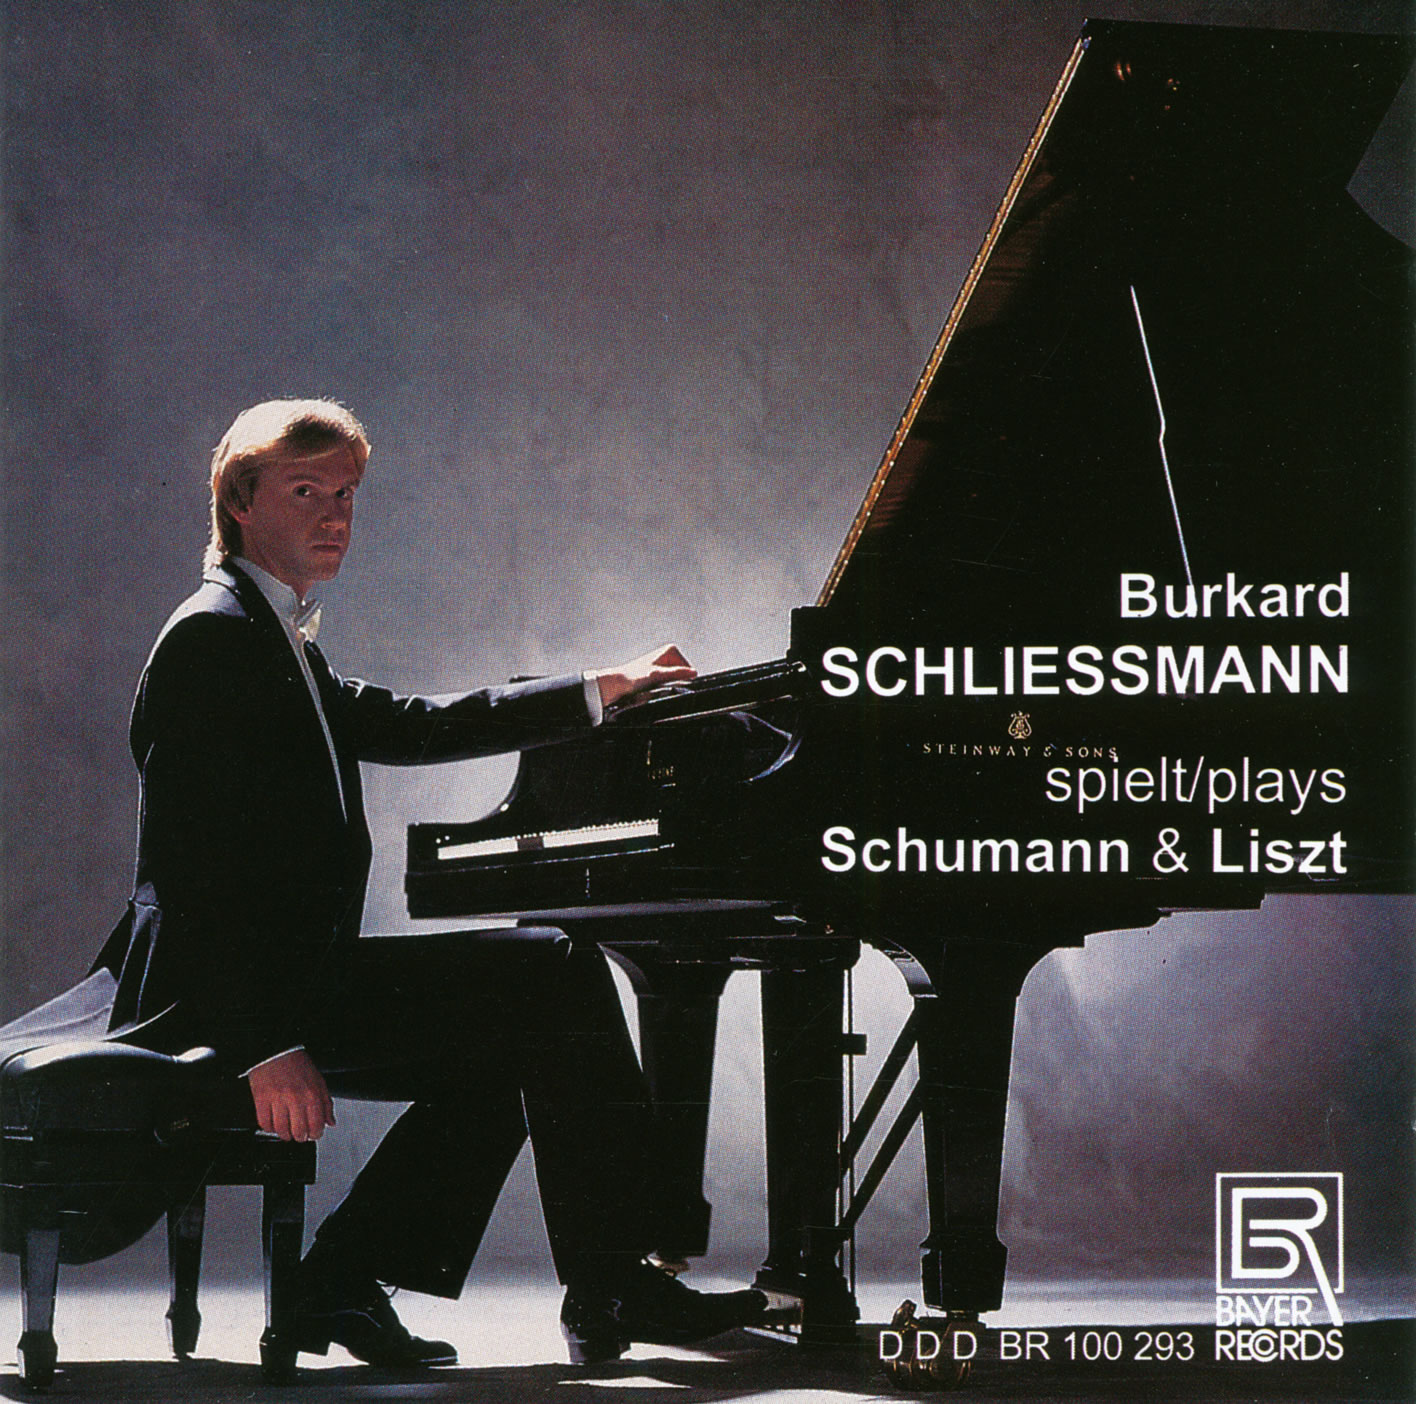 Robert Schumann & Franz Liszt